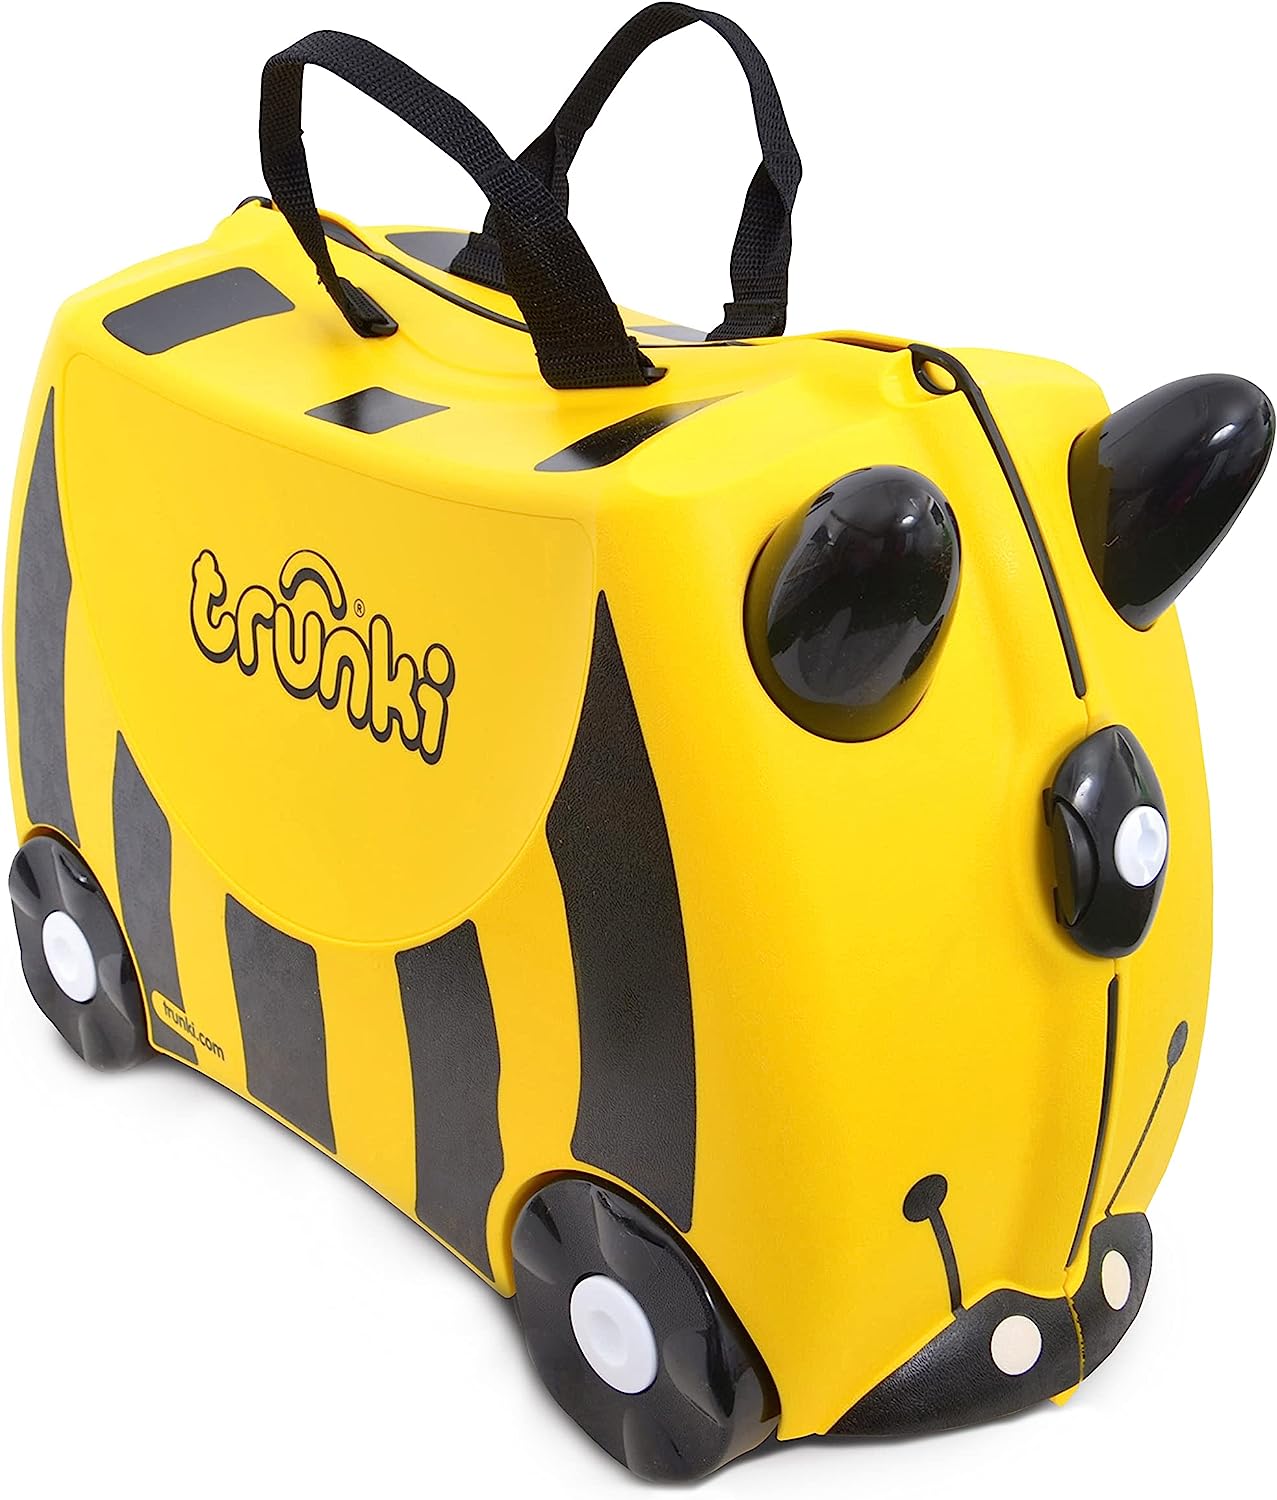 baby love 2000 sas di machina p.& c trunki valigia cavalcabile per bambini trolley bambini bagaglio a mano valigia cavalcabile ape bernard (giallo) - tr0044-gb nero donna